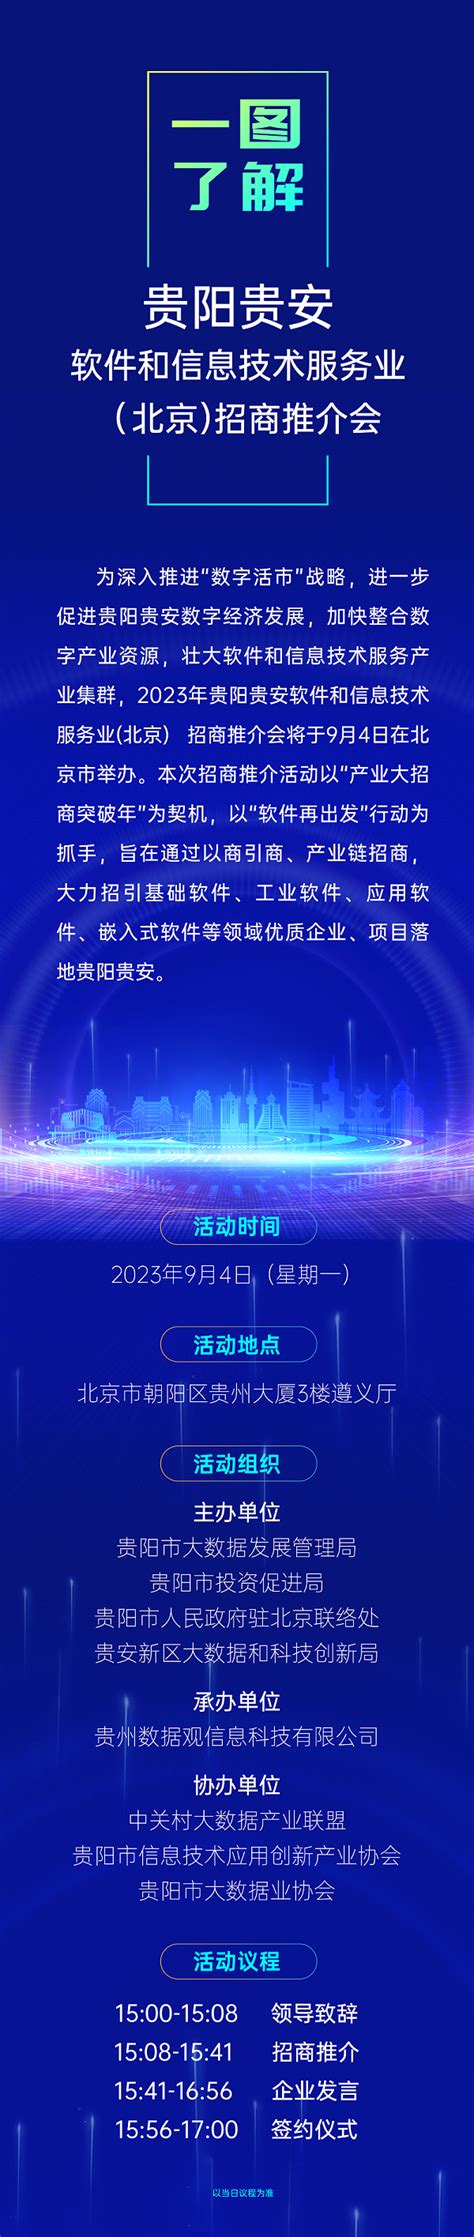 贵阳贵安软件和信息技术服务业（北京）招商推介会将在2023年服贸会期间召开 | 展会动态 | 数据观 | 中国大数据产业观察_大数据门户